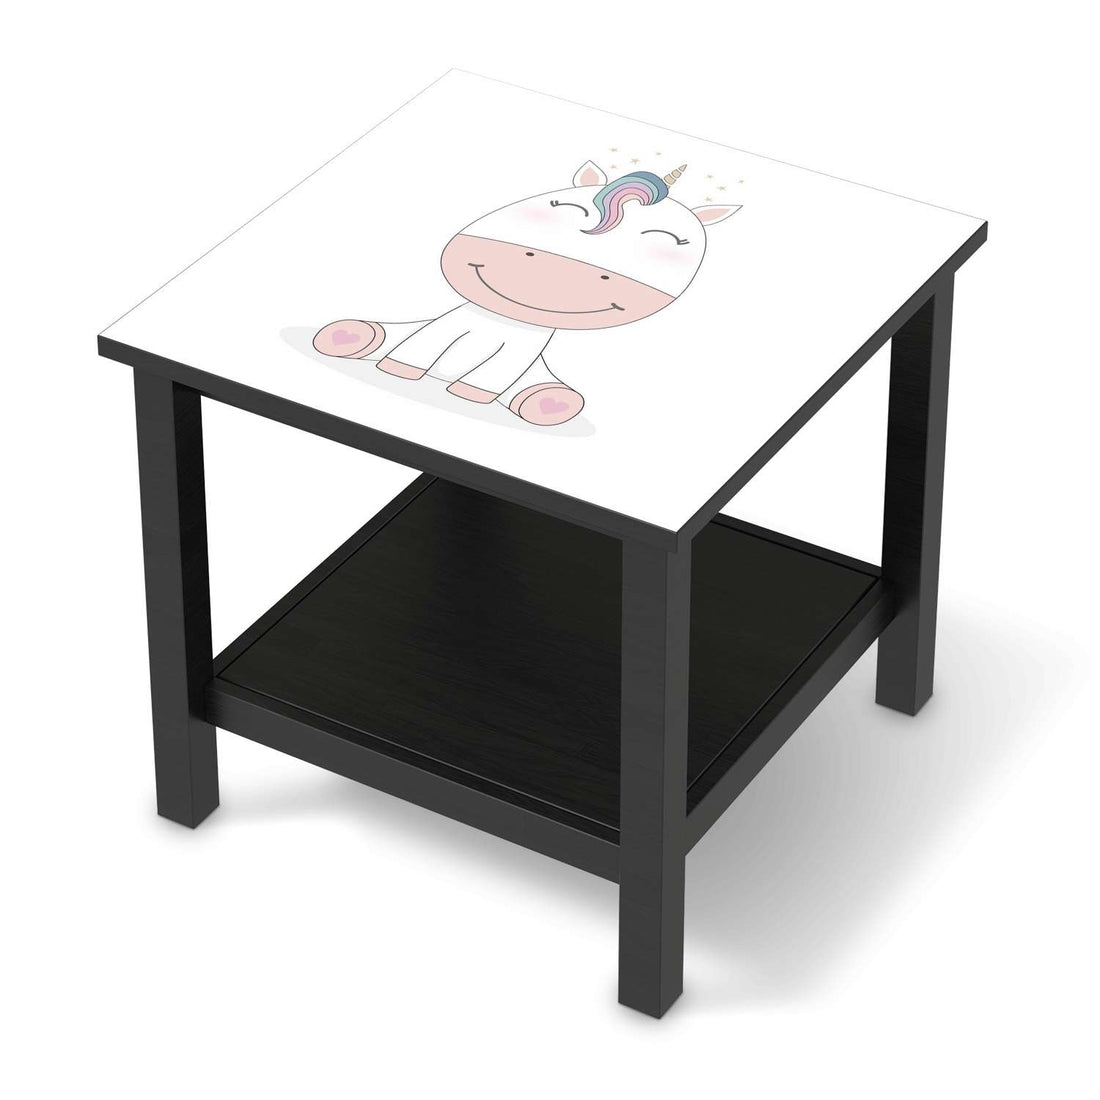 Möbel Klebefolie Baby Unicorn - IKEA Hemnes Beistelltisch 55x55 cm - schwarz